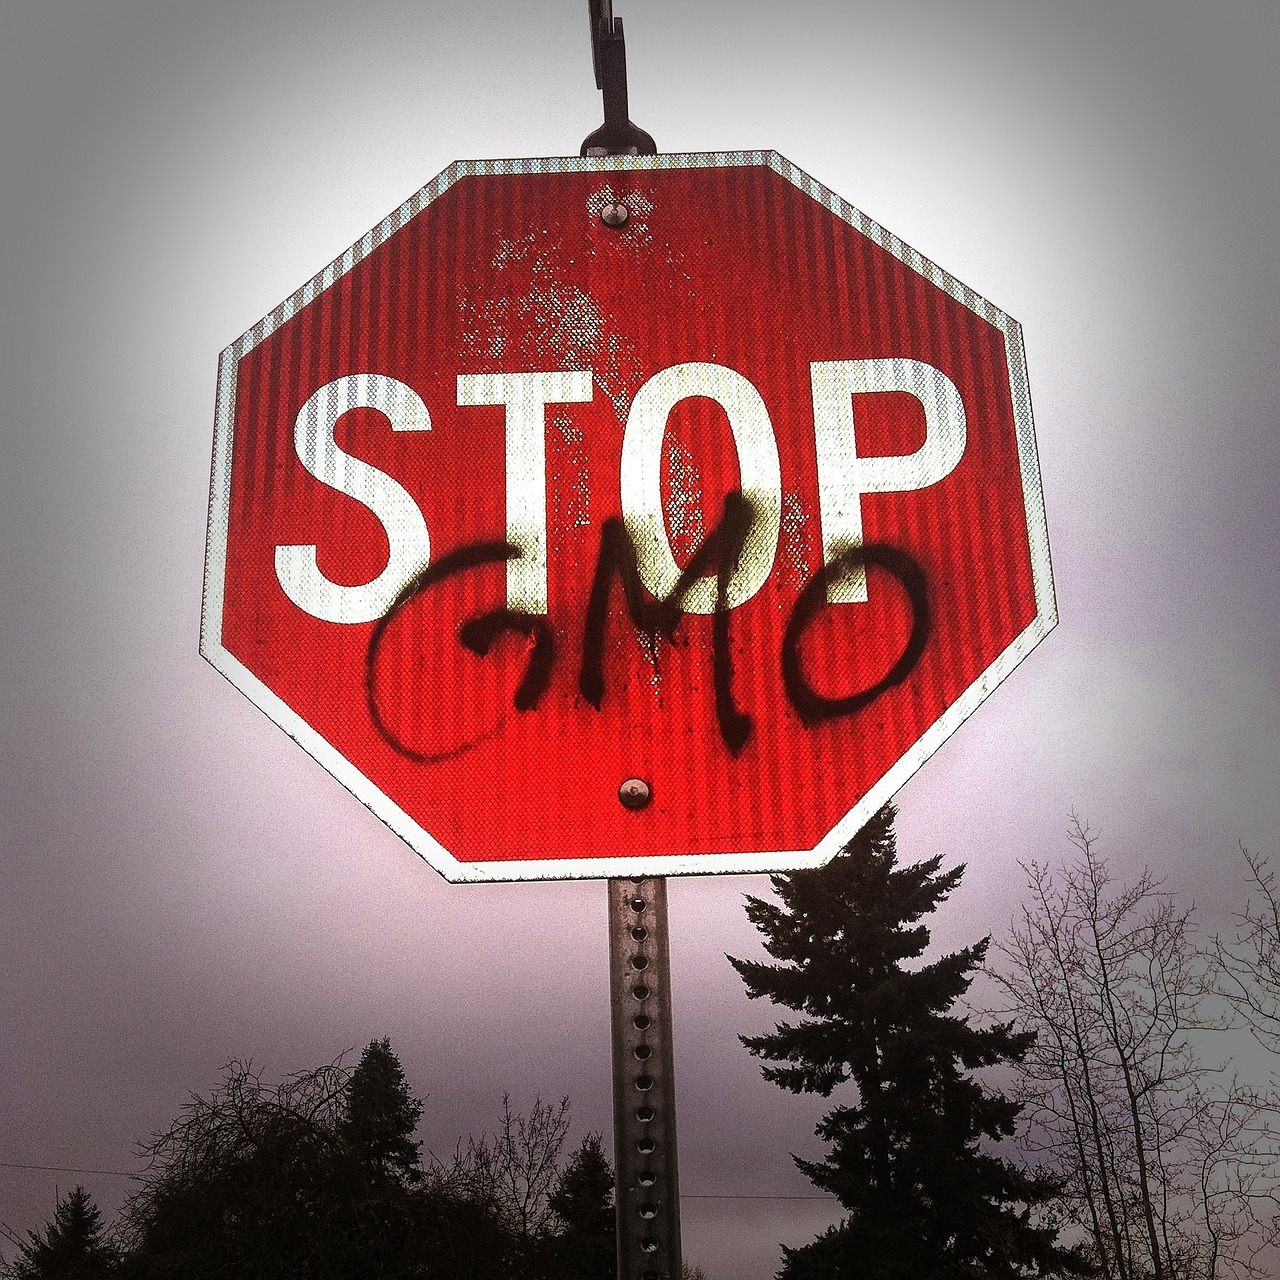 no-GMO